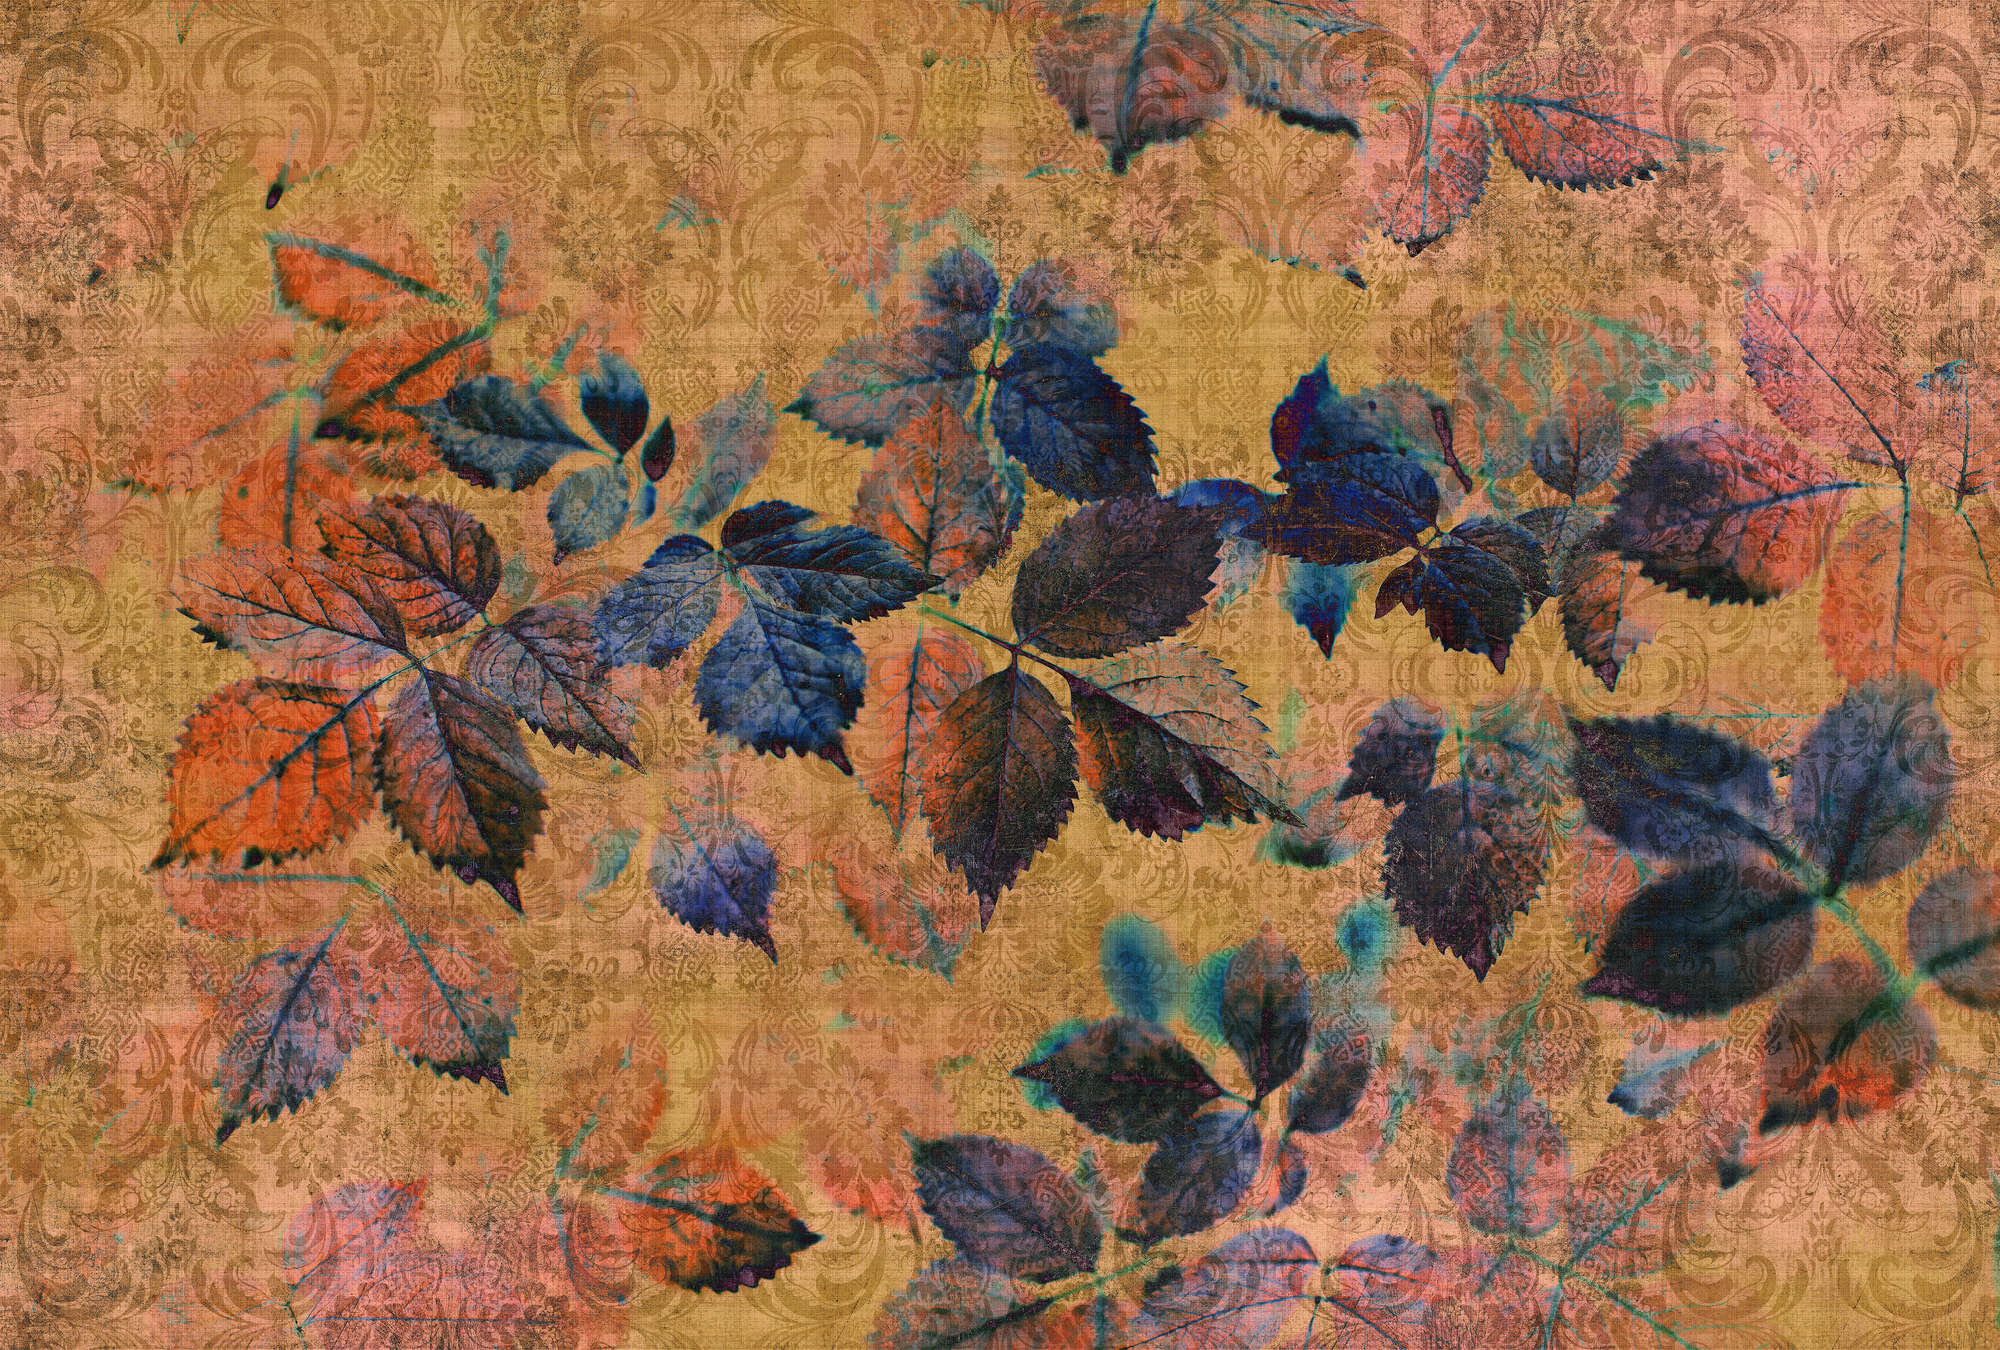             Indian summer 2 - Papel pintado floral en estructura de lino natural con ambiente cálido - Amarillo, Naranja | Premium liso no tejido
        